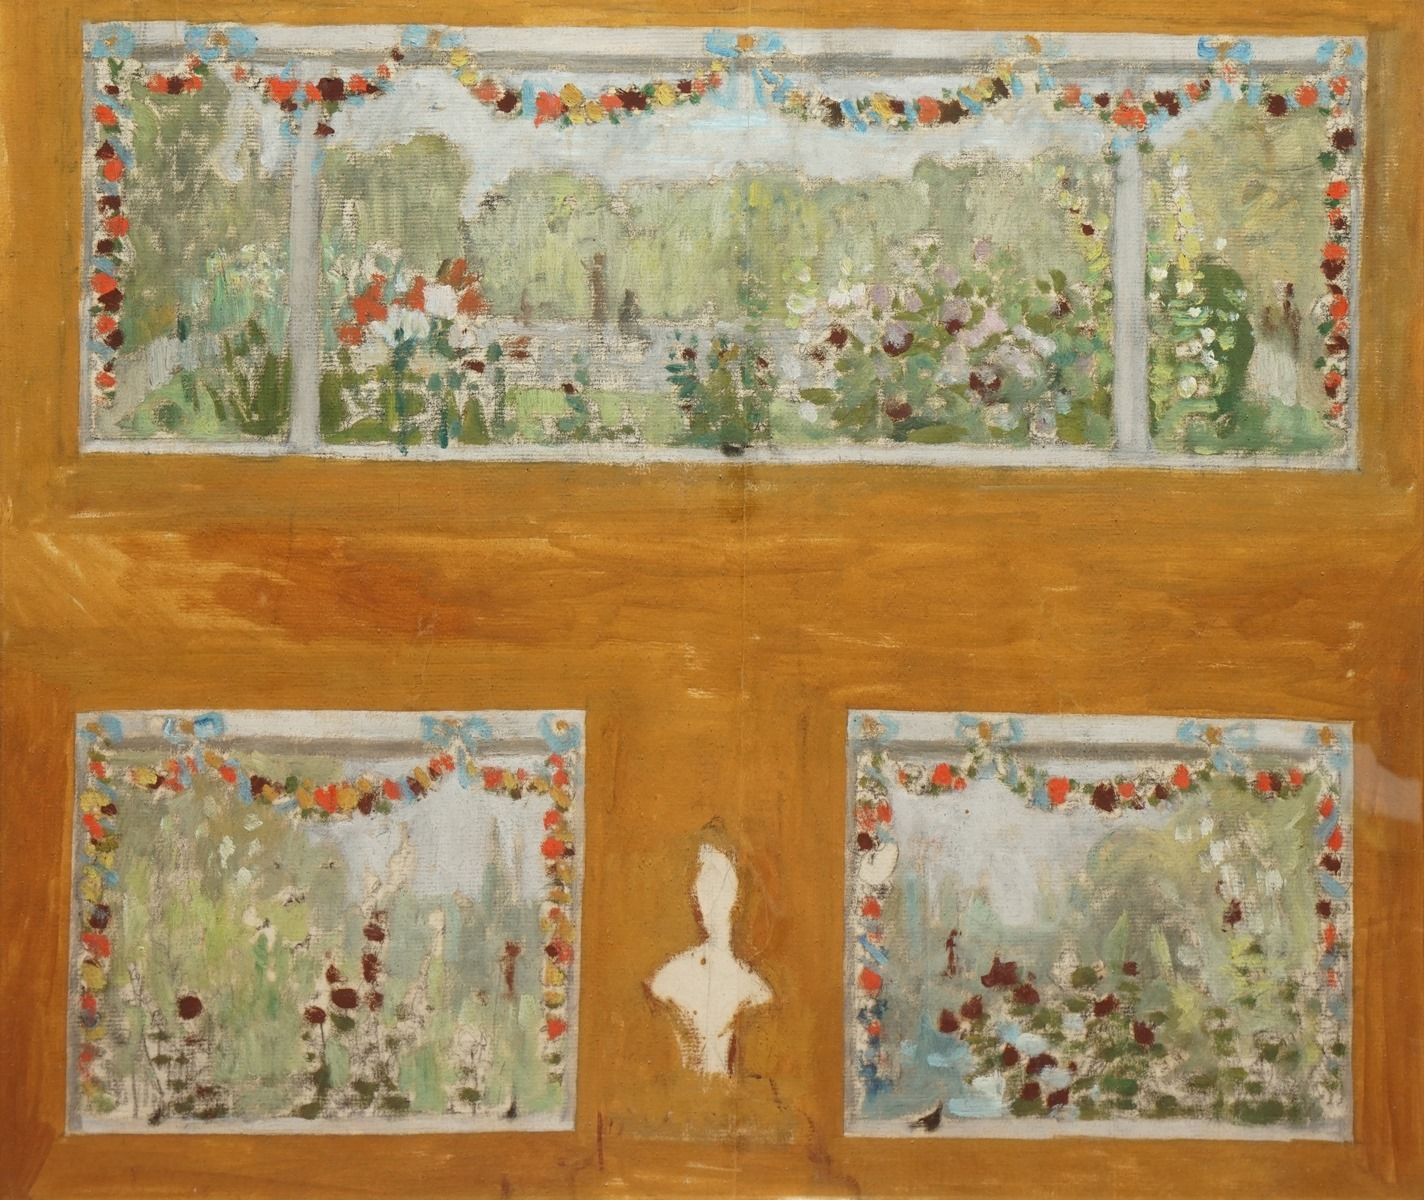 Null 欧内斯特，1844-1931
盛开的公园
纸上水粉设计（有褶皱的痕迹）
右下方有工作室印章
36 x 42厘米